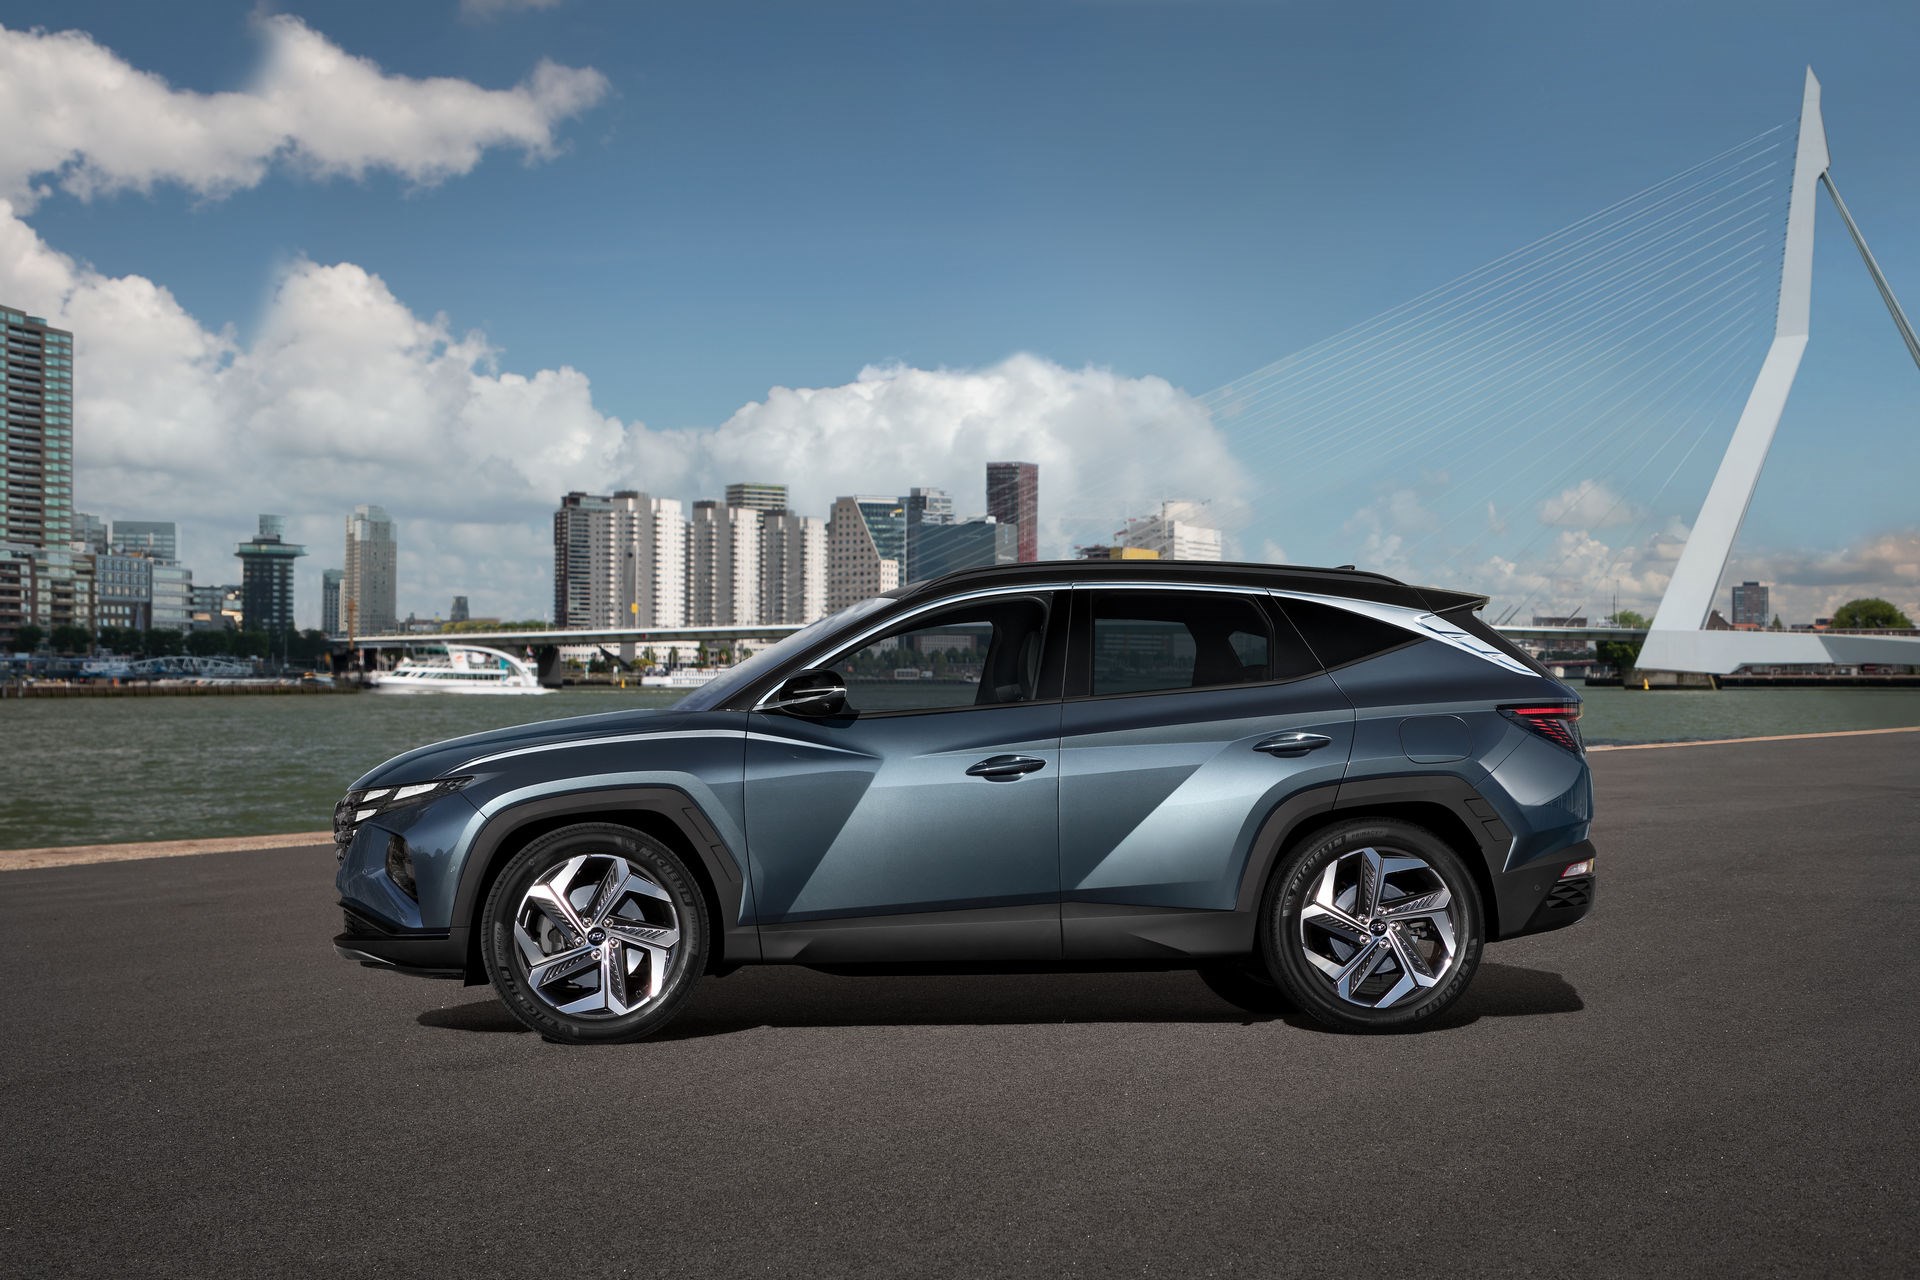 Yeni Hyundai Tucson tanıtıldı: İşte tasarımı ve özellikleri